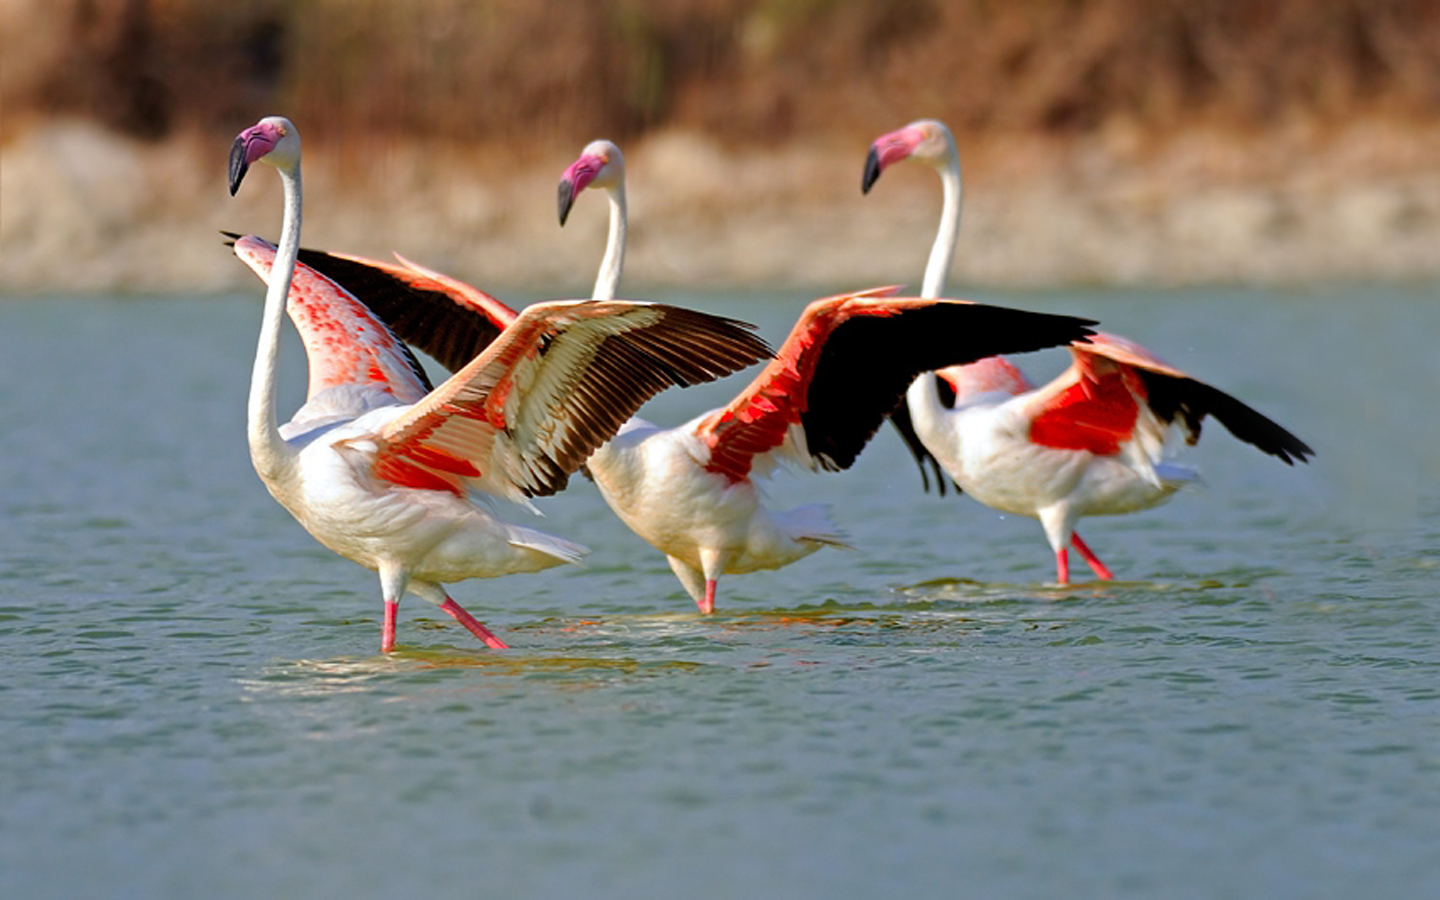 HD desktop wallpaper: Birds, Flamingo, Bird, Animal, Flock Of Birds  download free picture #263525